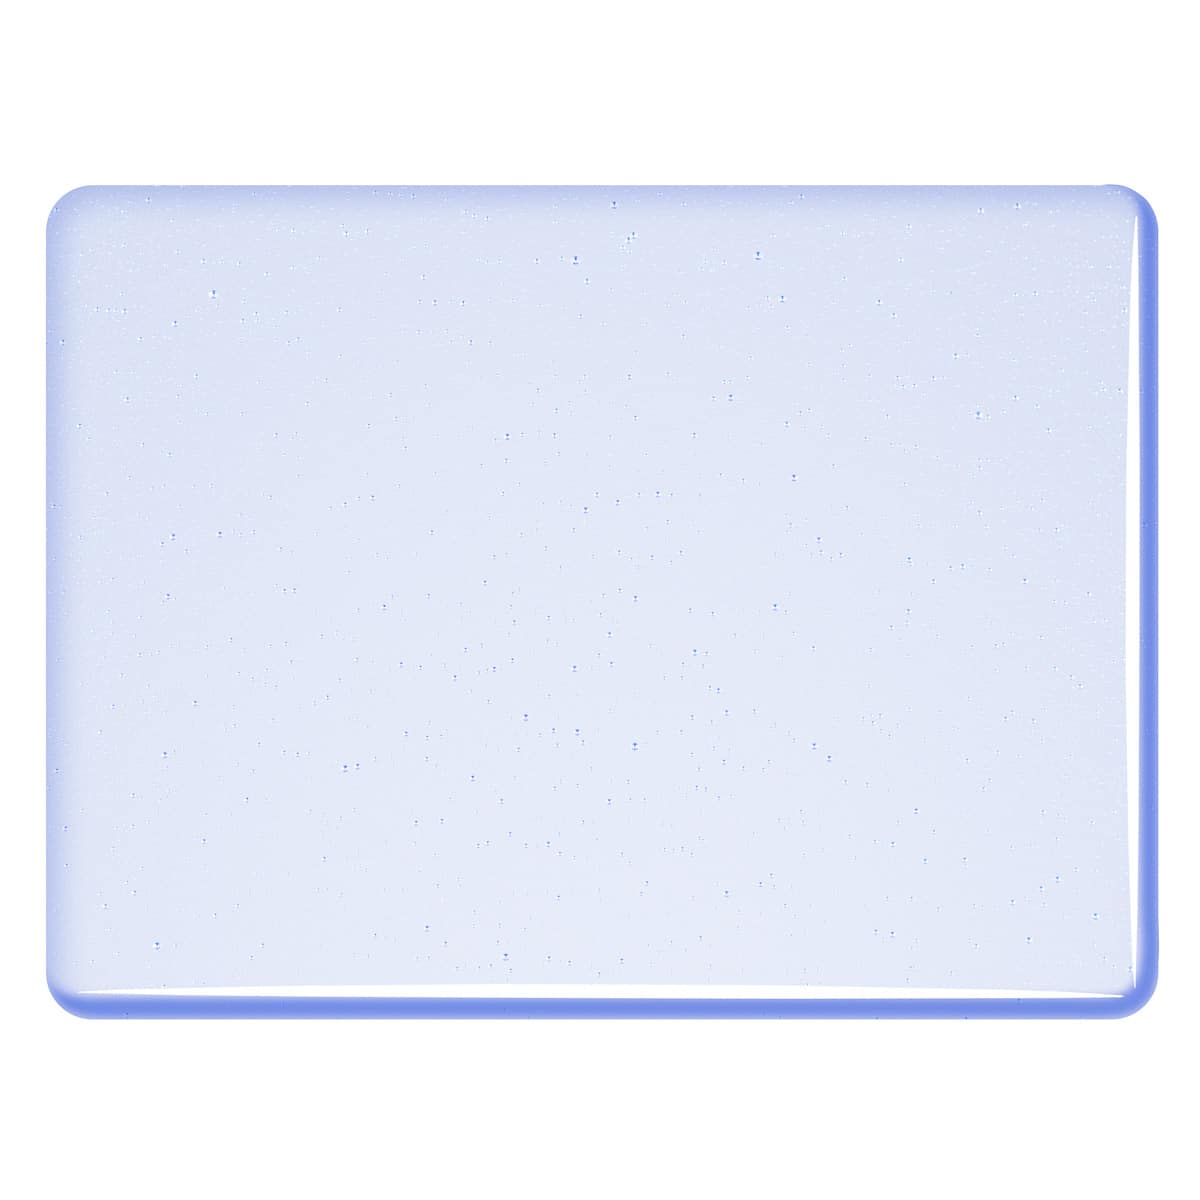 001814 Sapphire Blue Tint sheet glass swatch